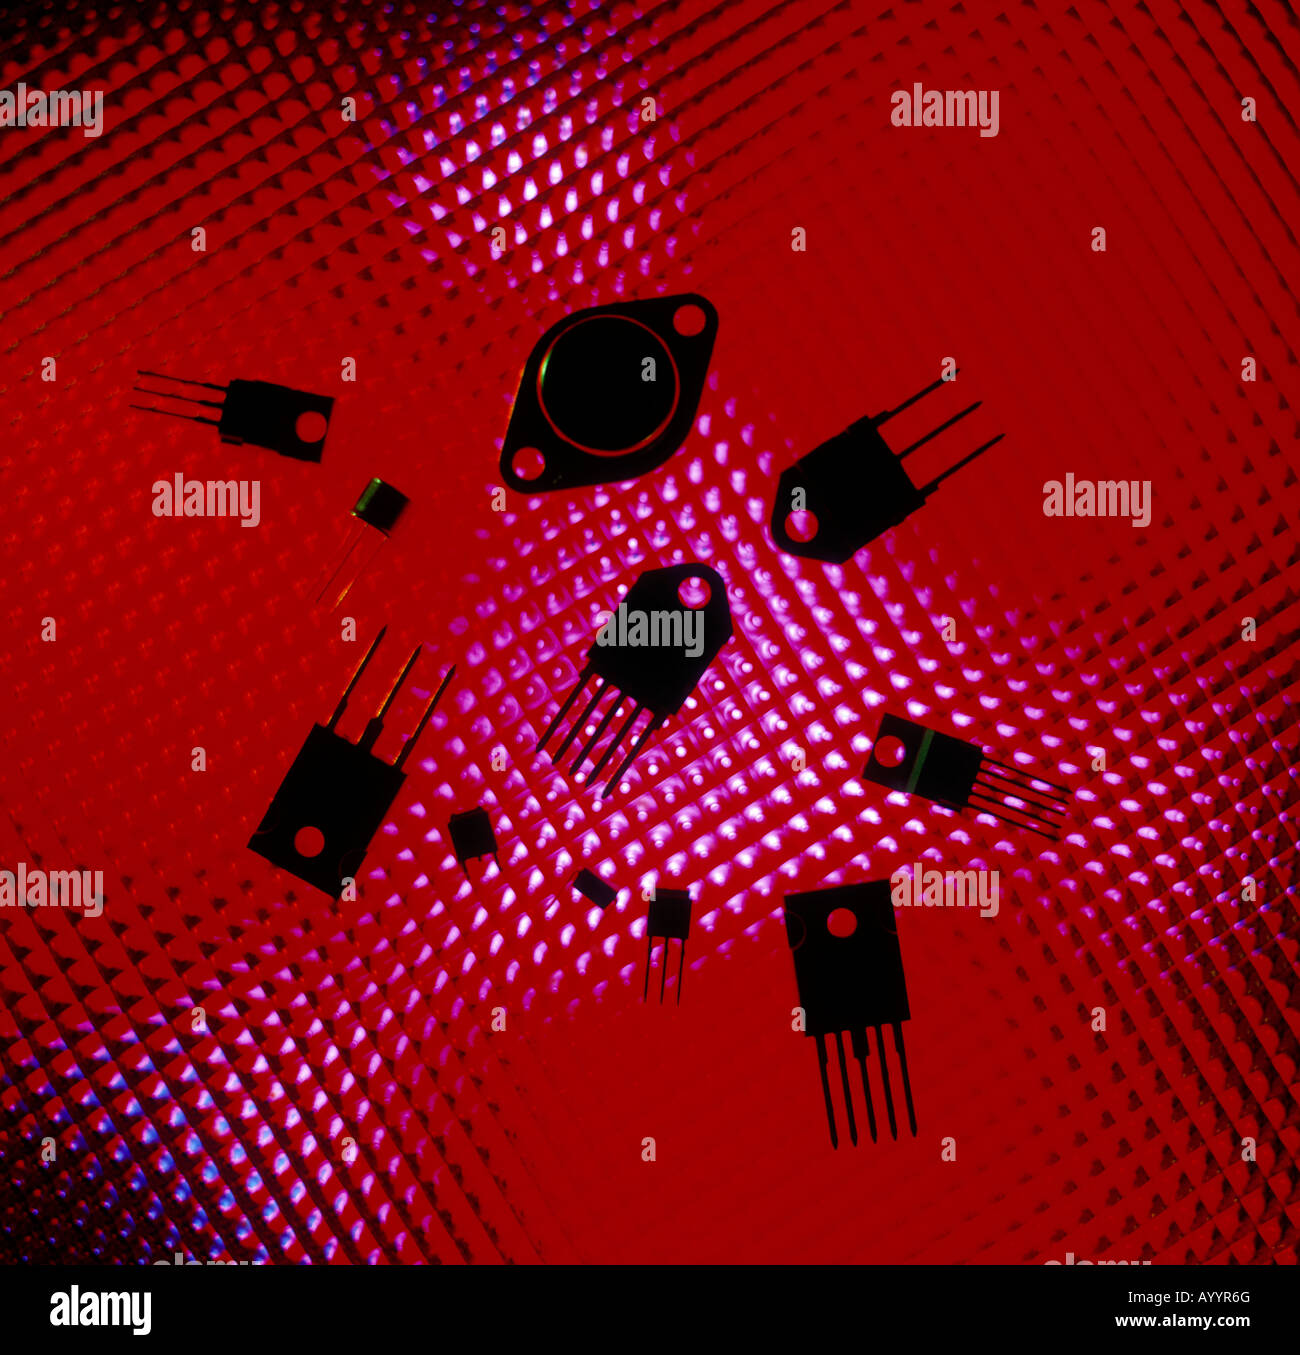 CMOS-elektronische Bauteile in Form der Silhouette über glühende rote Kugeln, zeigen verschiedene Größe und Verpackung. Stockfoto